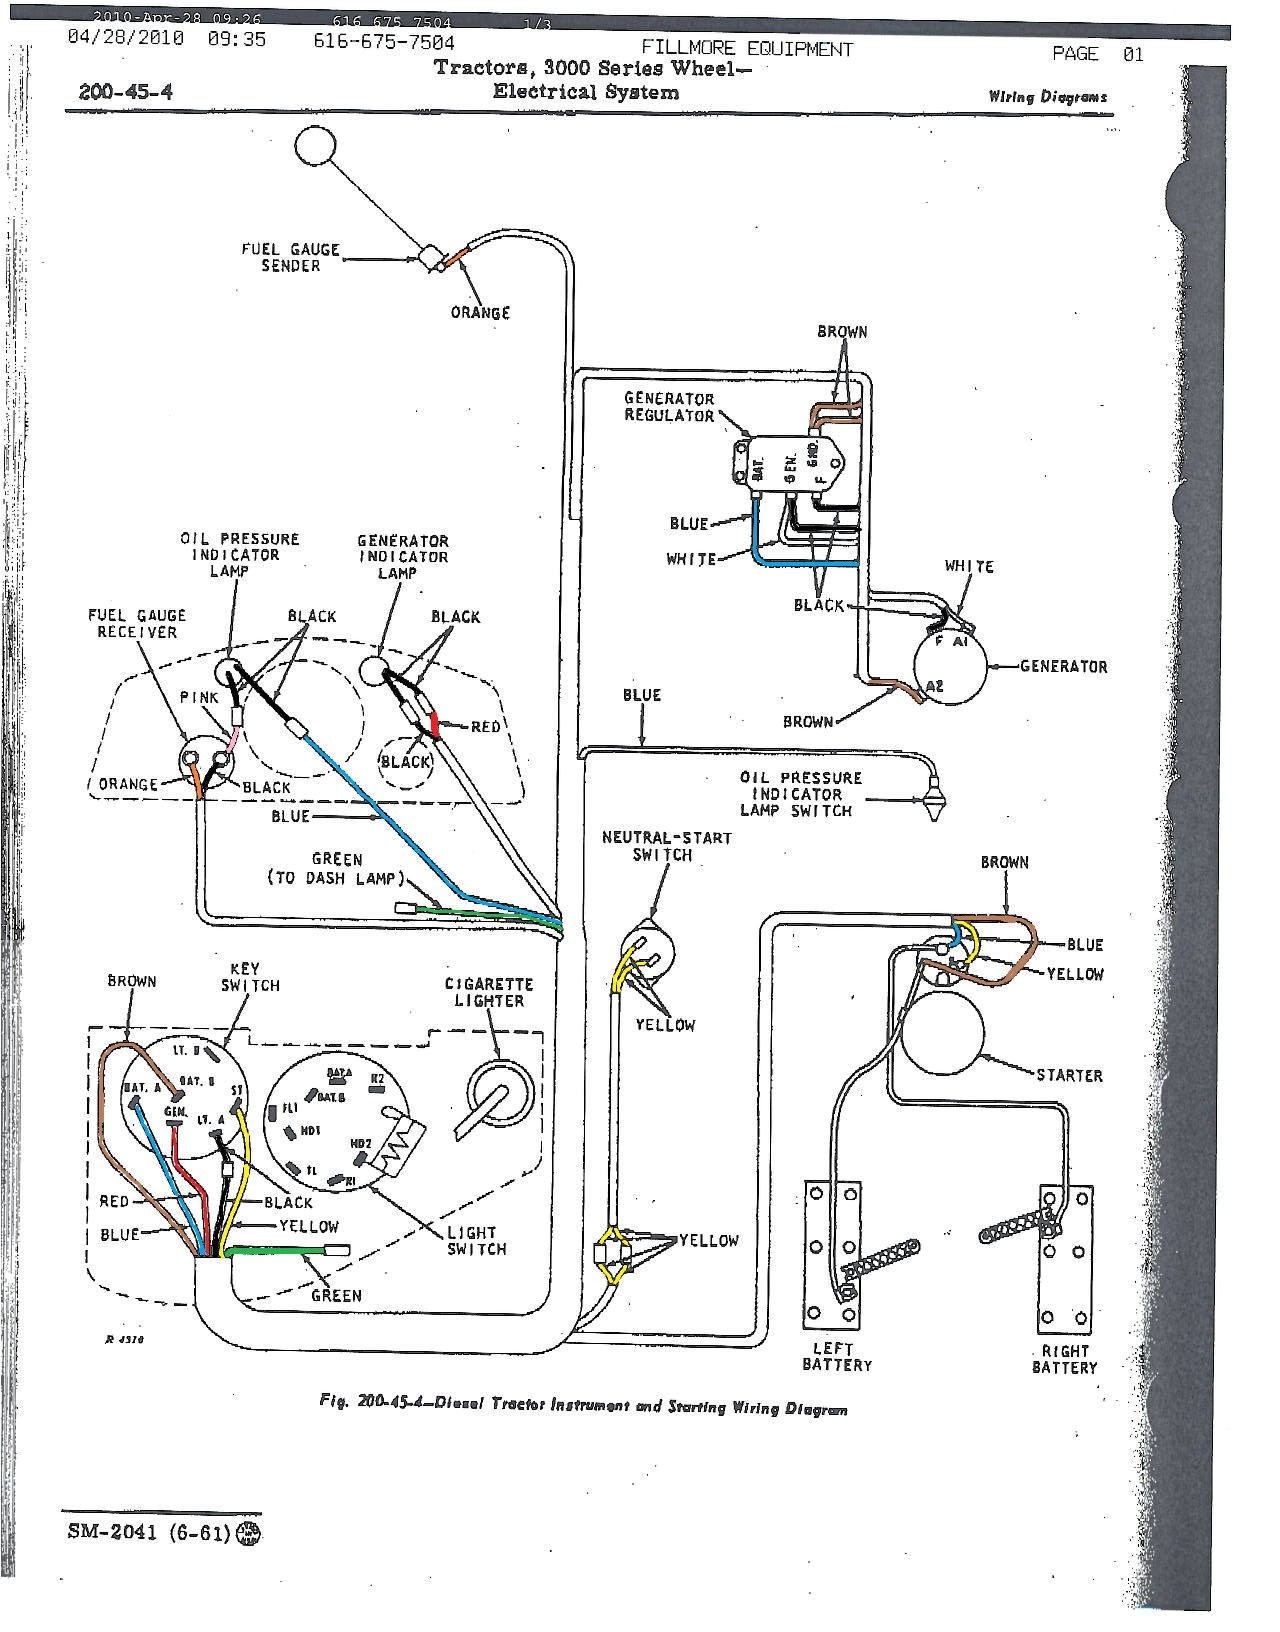 john deere fuel gauge wiring wiring diagram database john deere fuel gauge wiring diagram john deere fuel gauge diagram